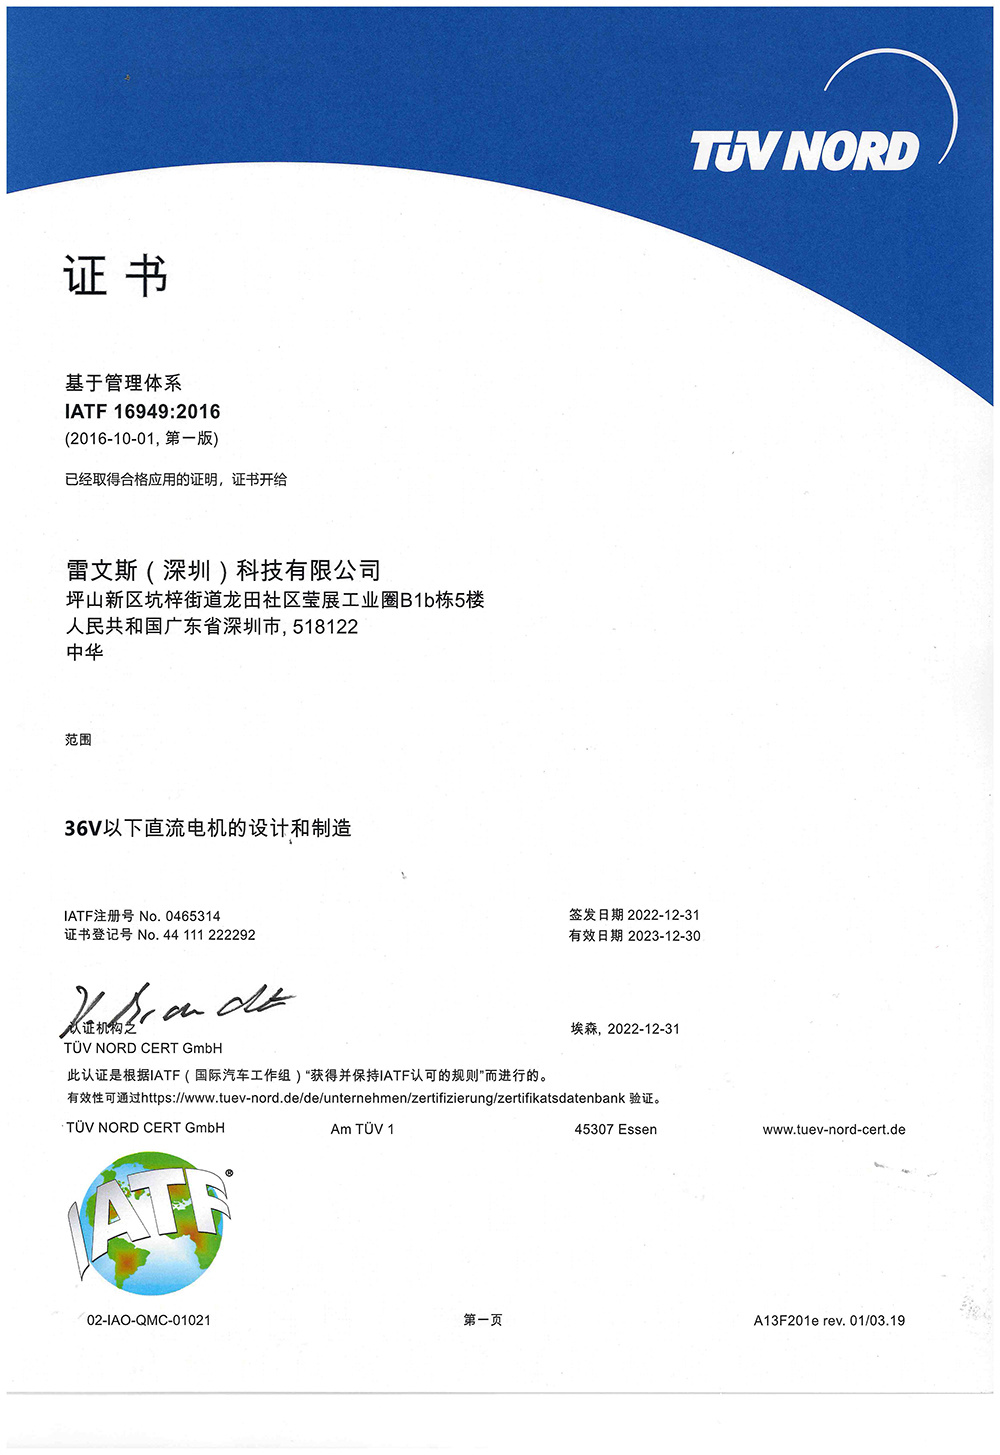 TS Certificate -20230213